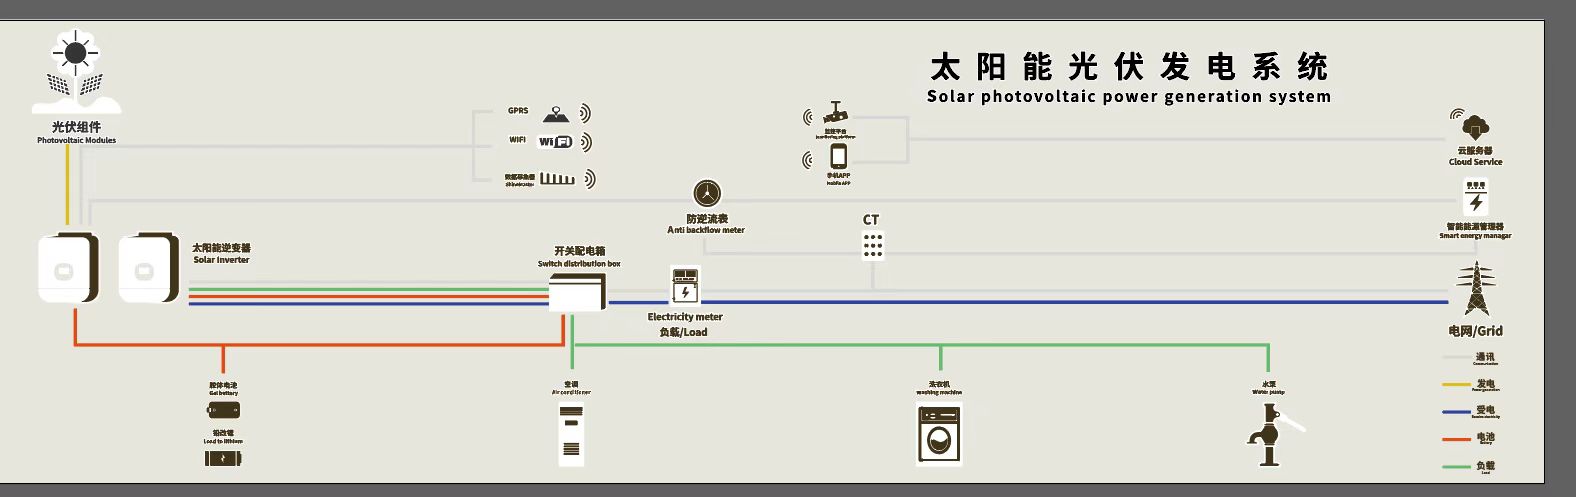 מערכת אנרגיה סולארית של 5 קילוואט רשת מלאה לשימוש ביתי